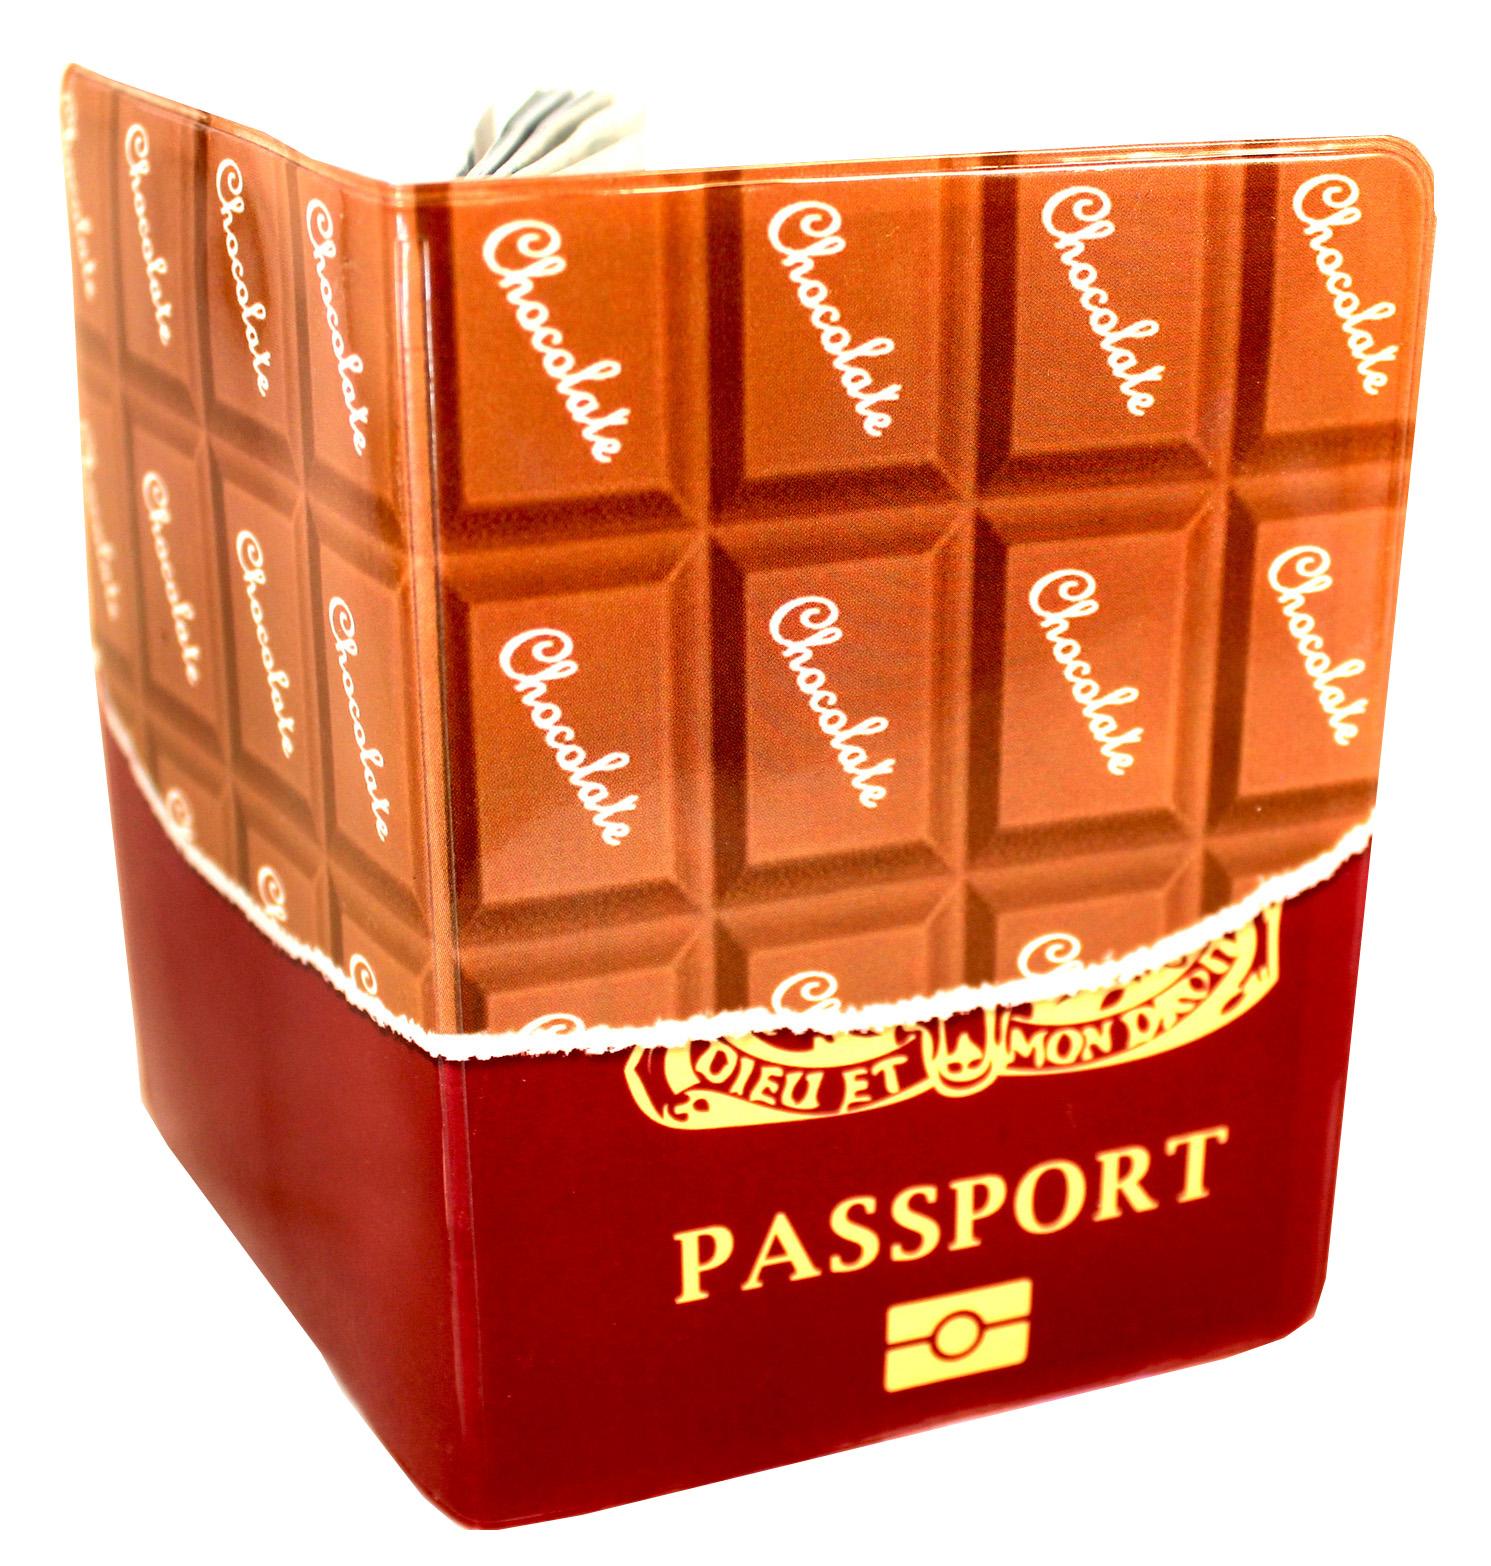 UK Chocolate Passport Cover